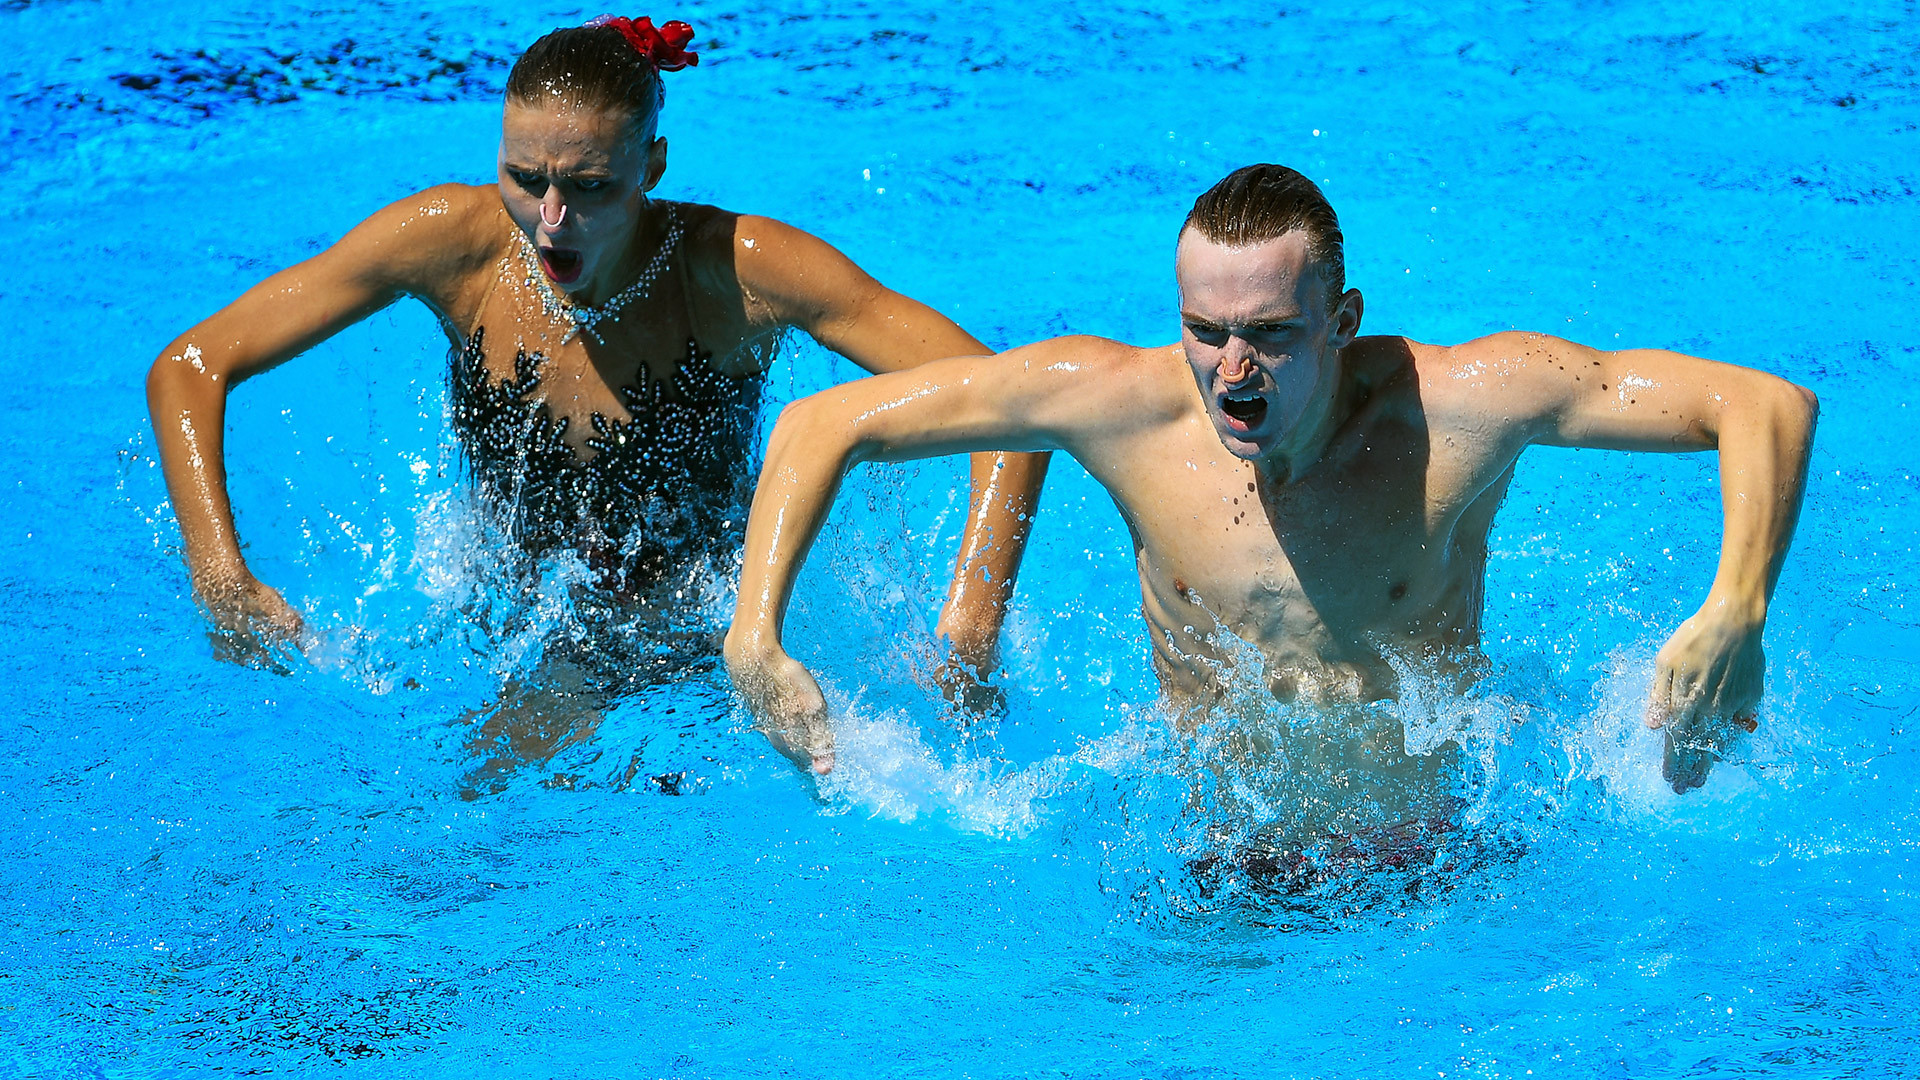 ロシア代表のミハエラ・カランチャとアレクサンドル・マリツェフがテクニック・プログラムを演じる。シンクロナイズドスイミング混合デュエットの試合、ブダペストの世界水泳選手権2017にて。